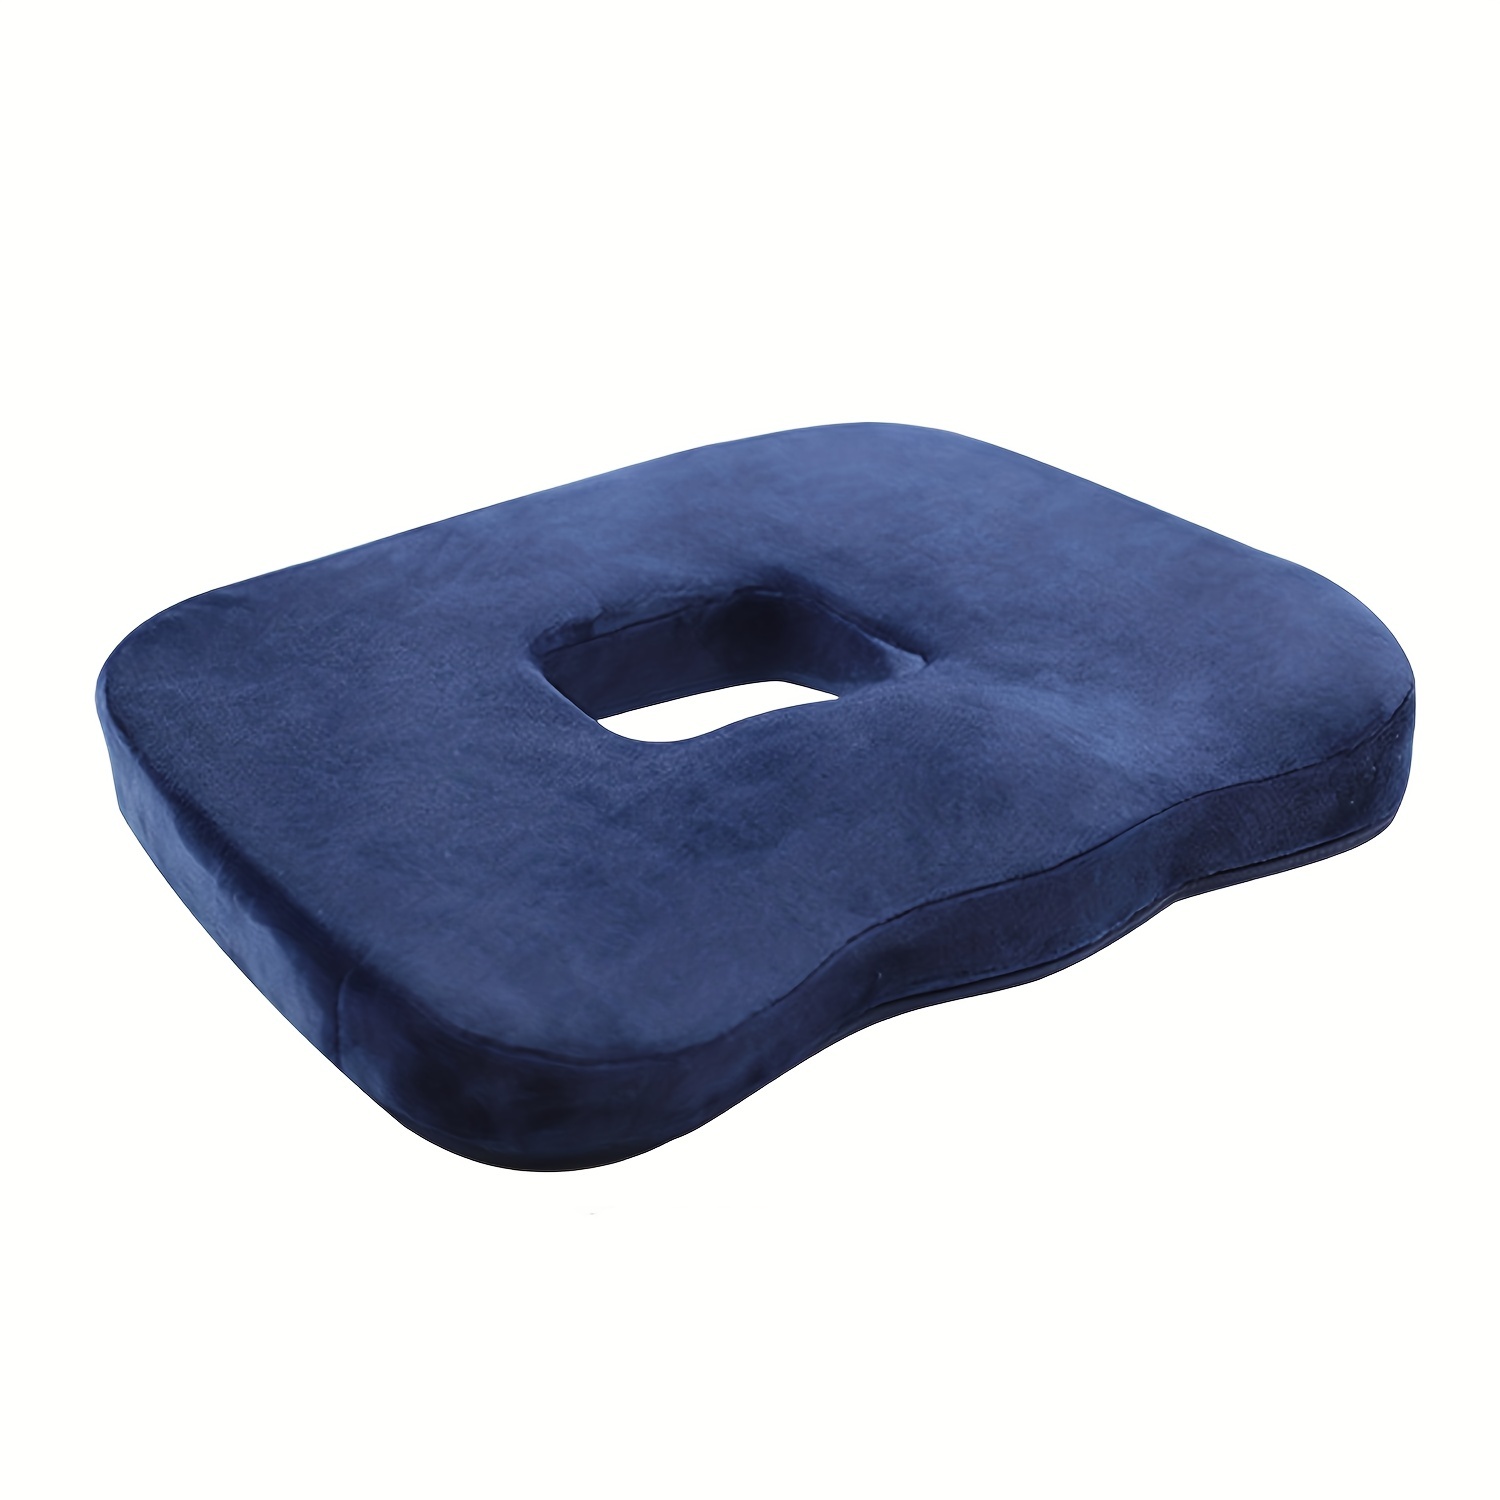 Donut Seat Cushion, Donut Pillow,hemorrhoid Tailbone Cushion,car